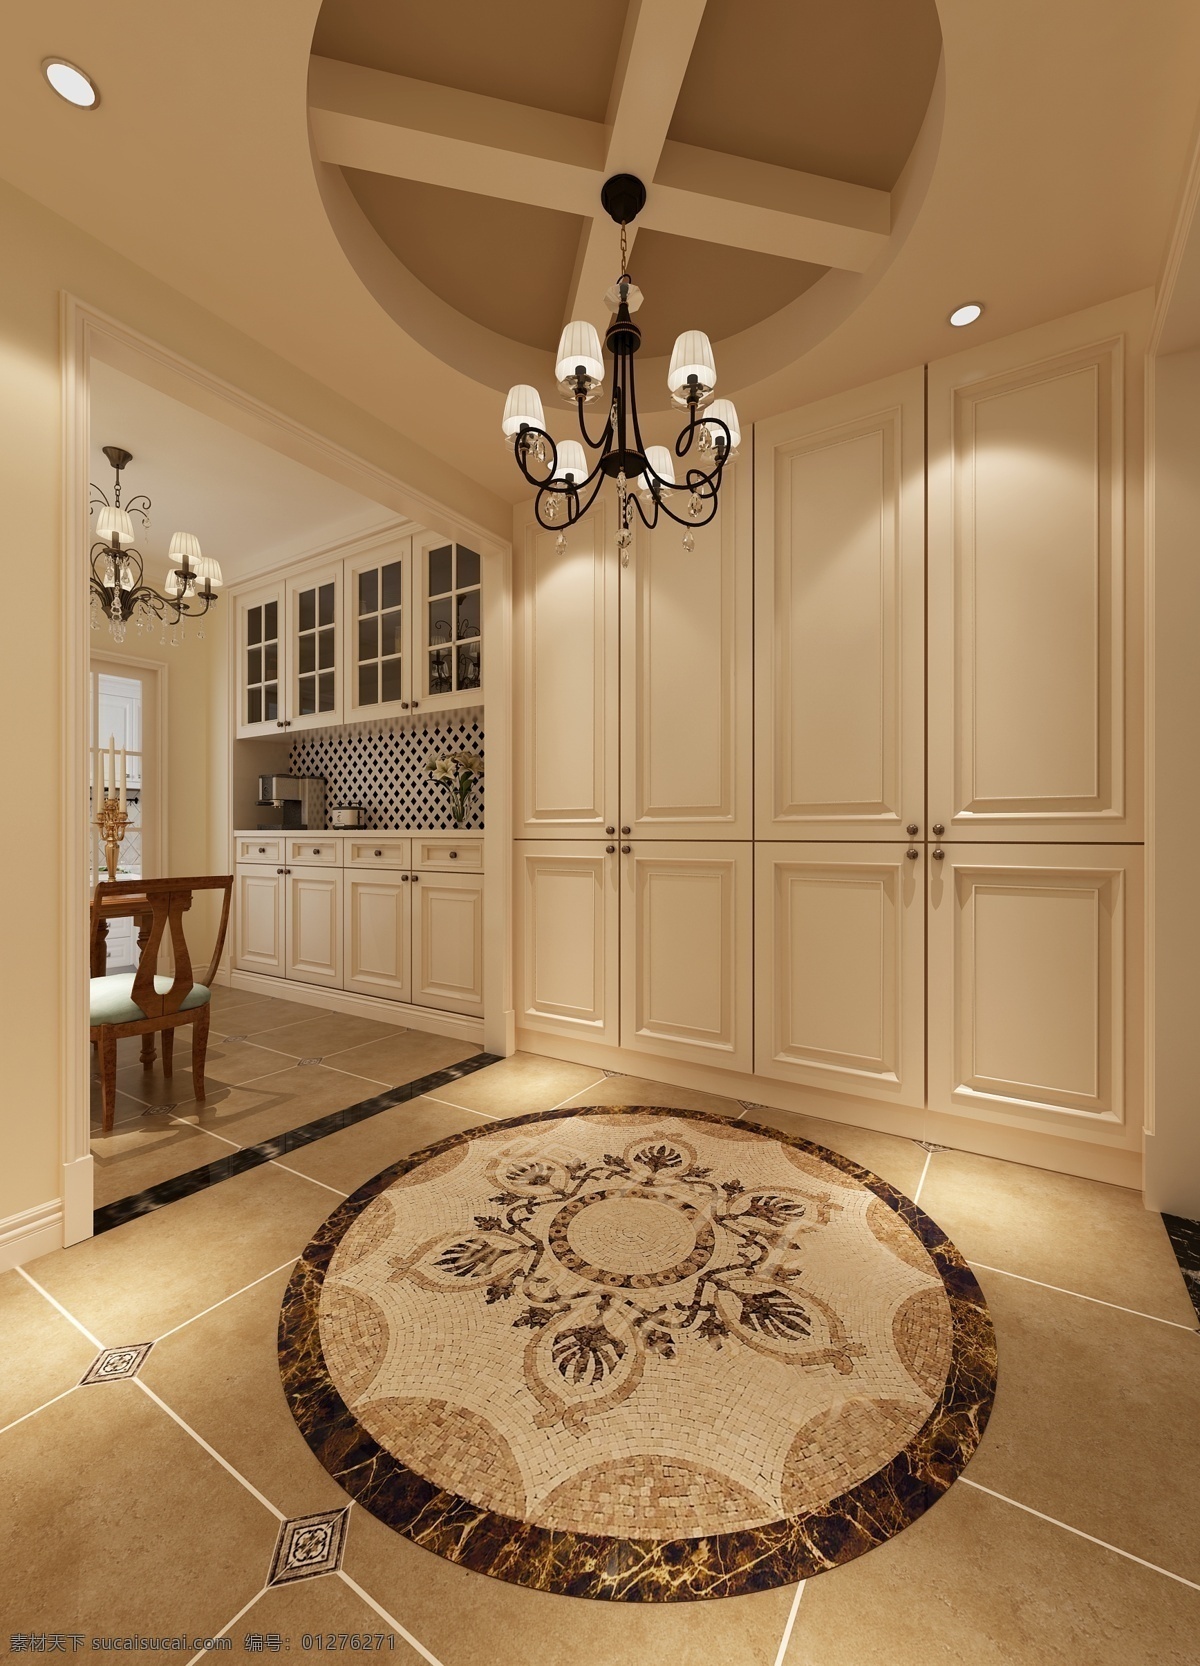 美式 清新 大气 厨房 白色 柜子 室内装修 效果图 瓷砖地板 白色柜子 黑色 材质 水晶灯 木制餐桌